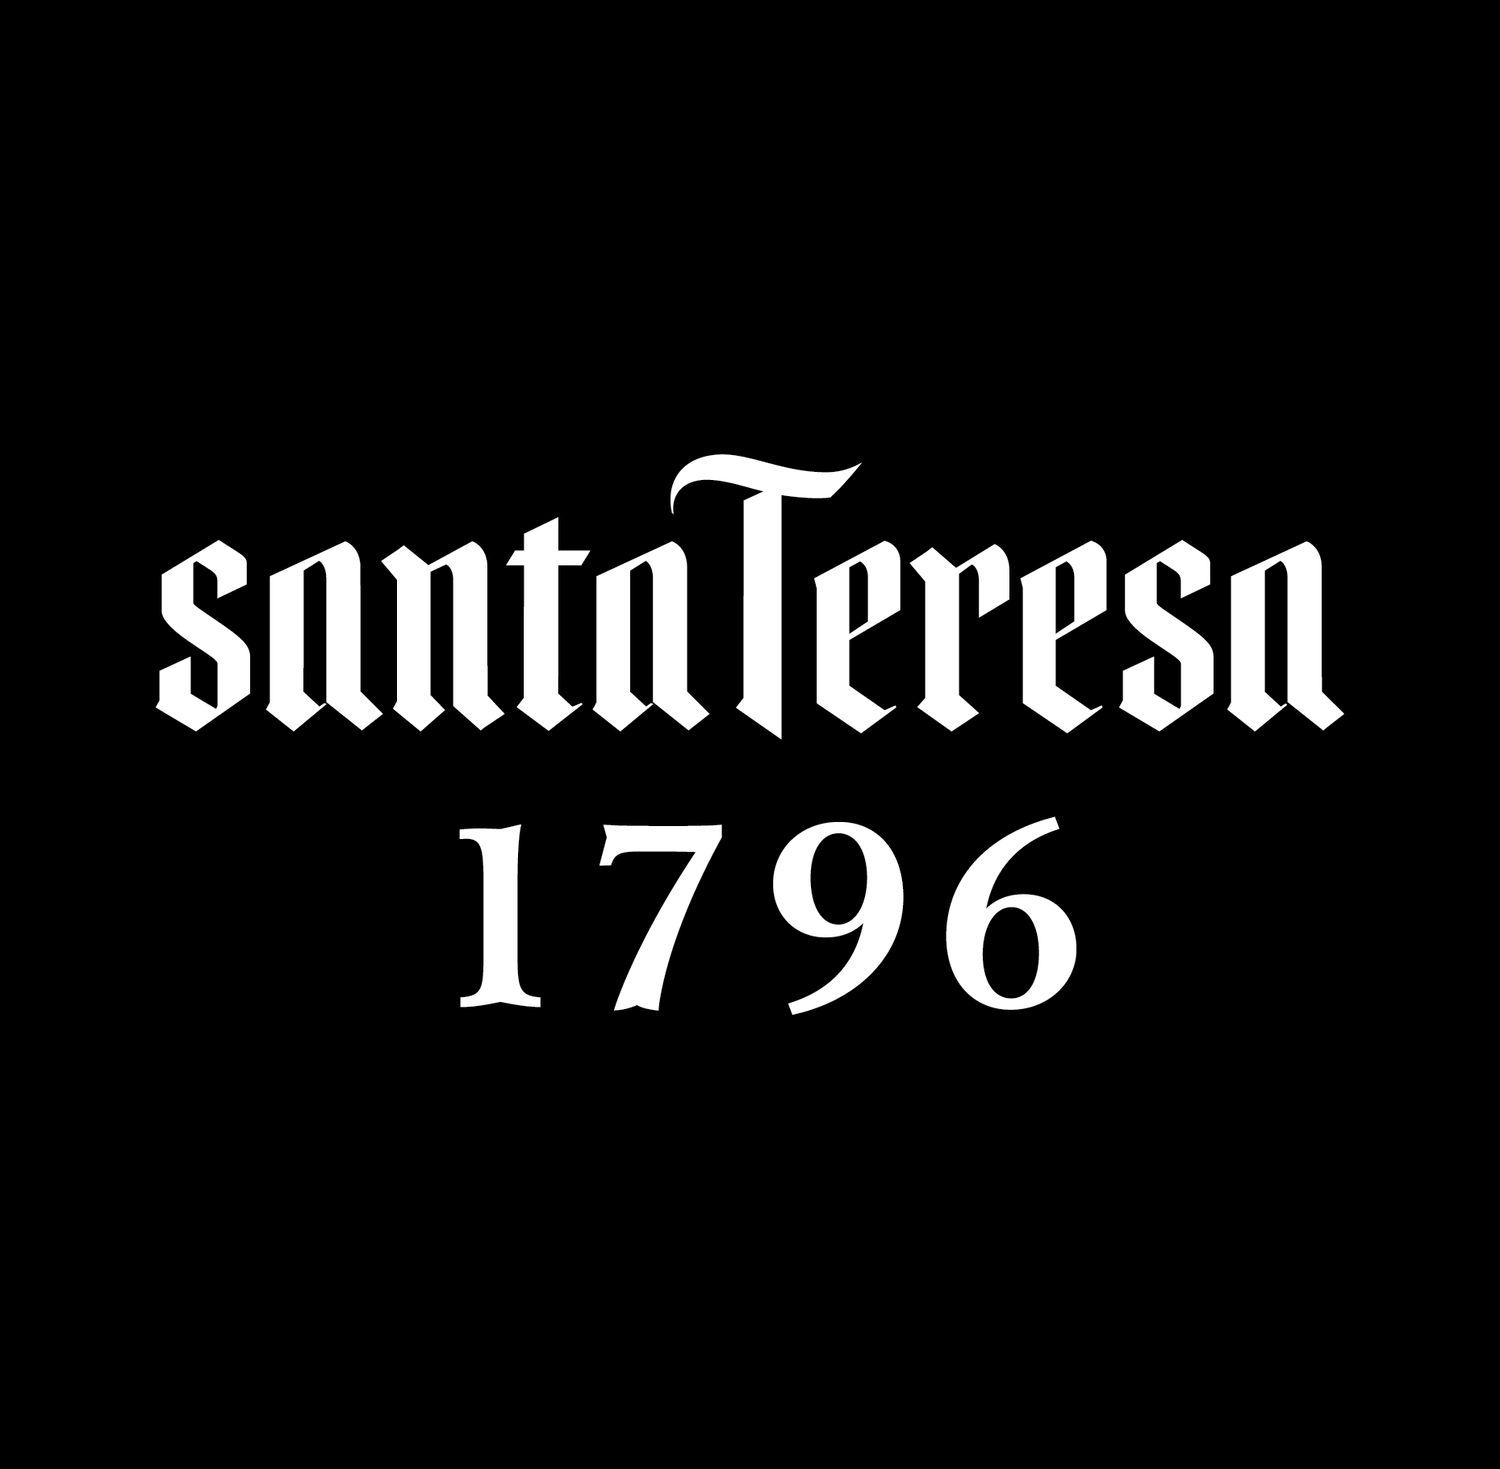 Santa Teresa Logos